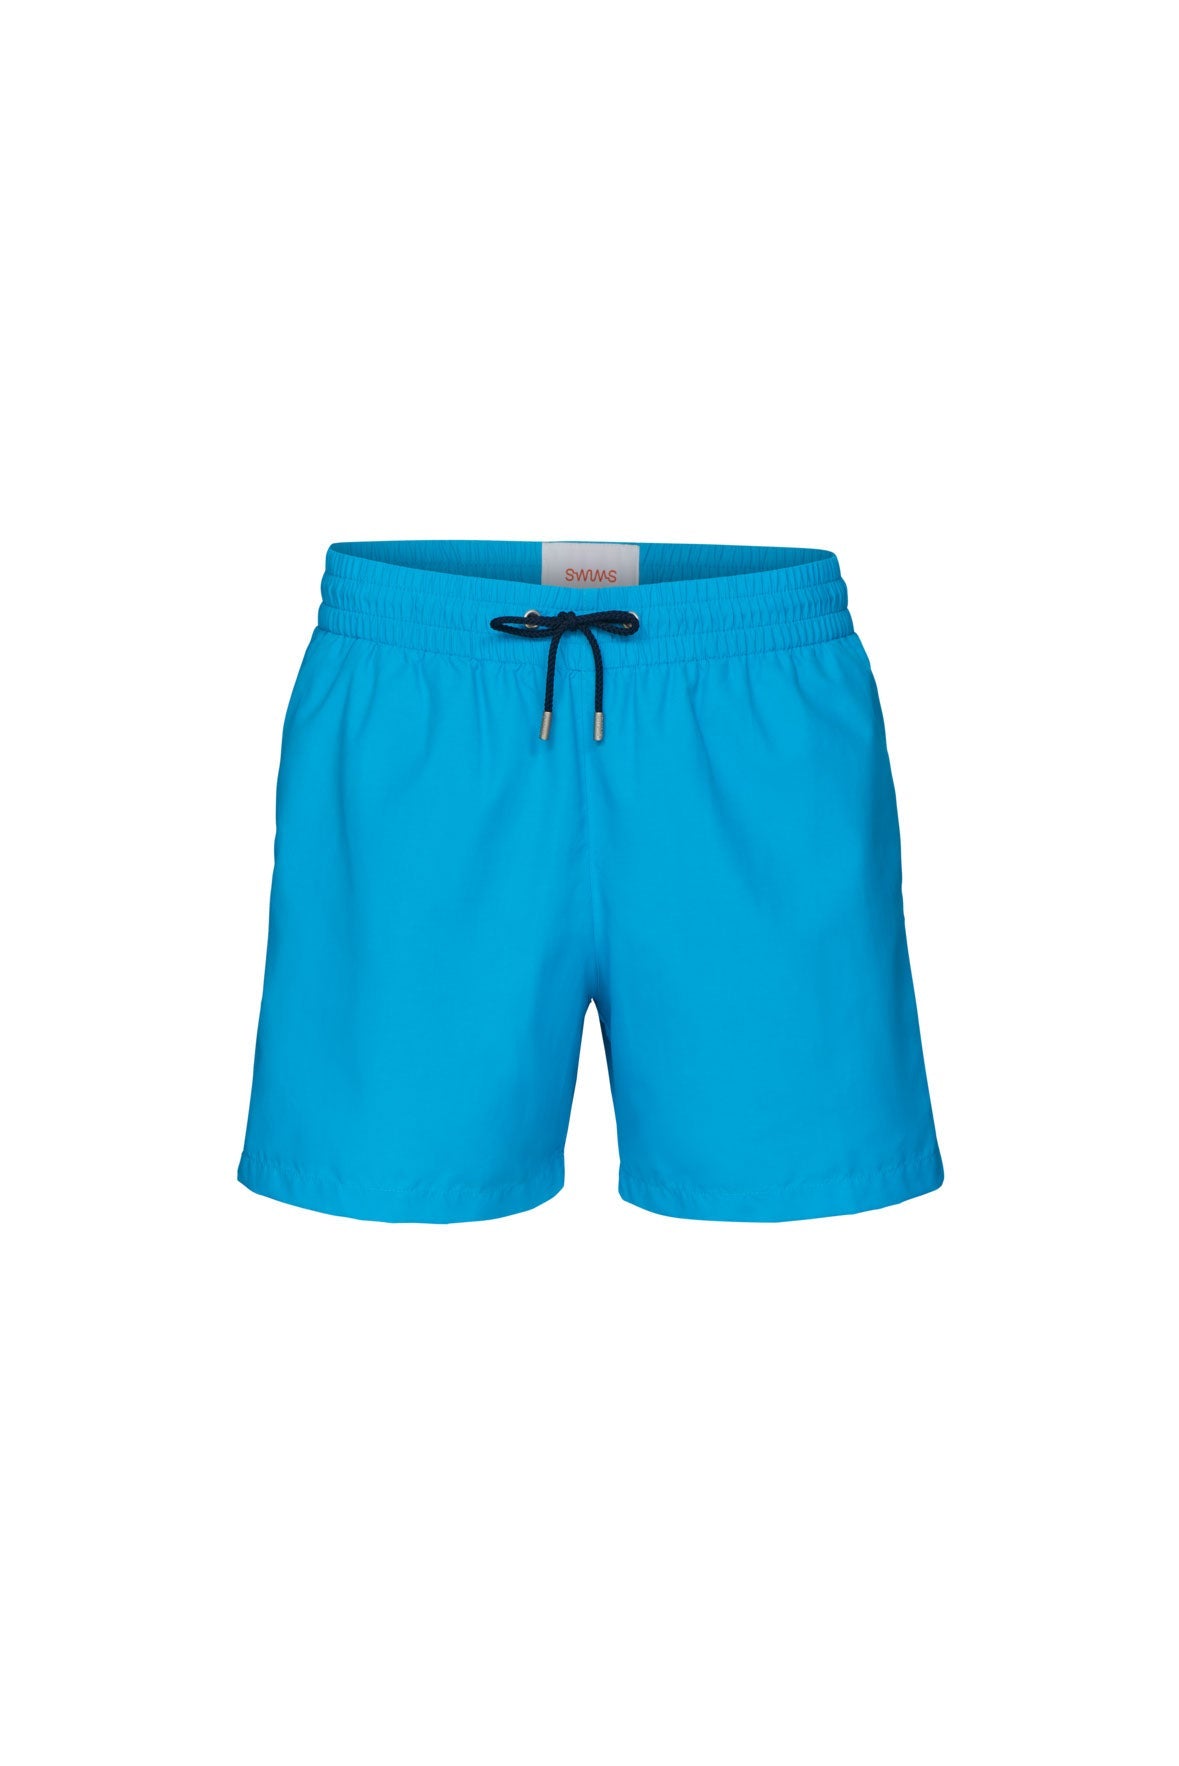 The Swim Shorts - Fjord Blue